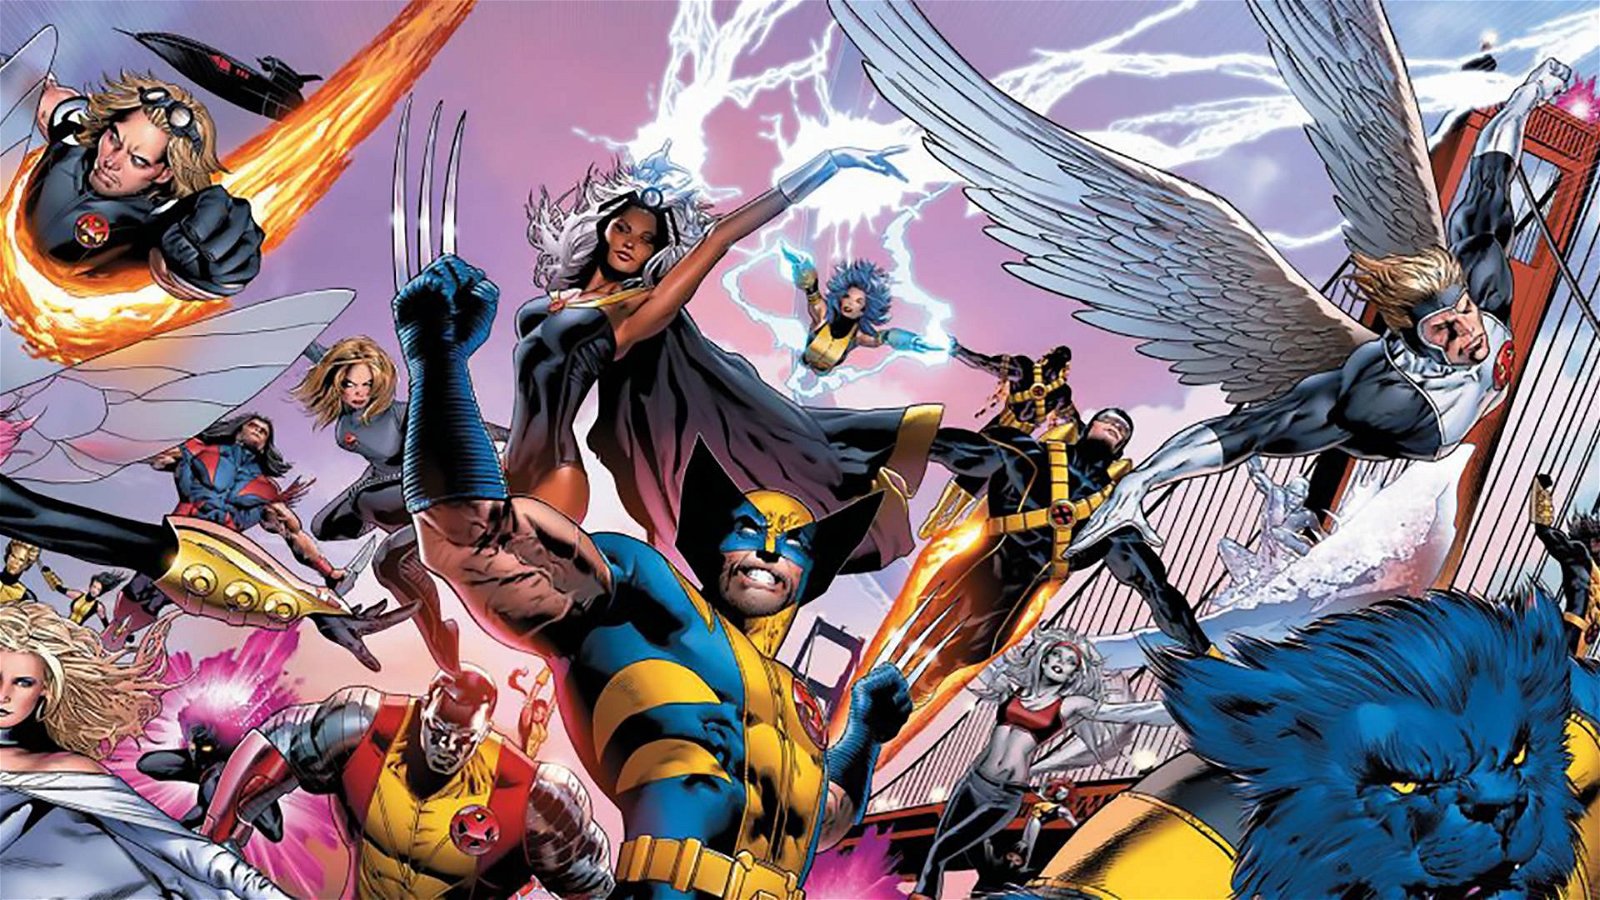 Immagine di Iron Man: Kevin Feige svela una scena post-credit con gli X-Men!